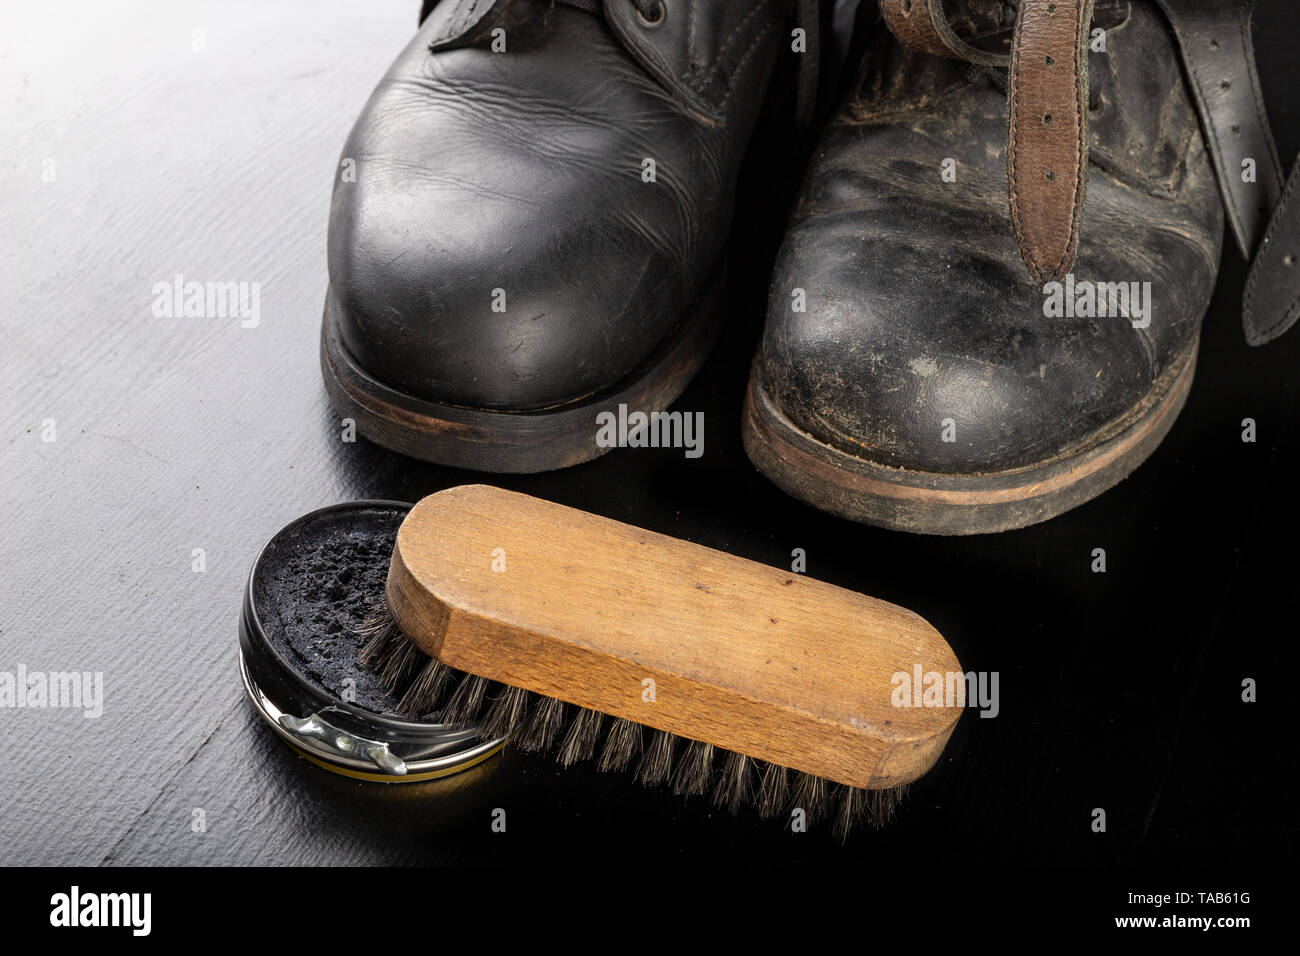 Schuhcreme, Bürste und Schwarze Militärstiefel. Polieren und Reinigen Schuhe  auf einem Schwarzen Tisch. Der dunkle Hintergrund Stockfotografie - Alamy